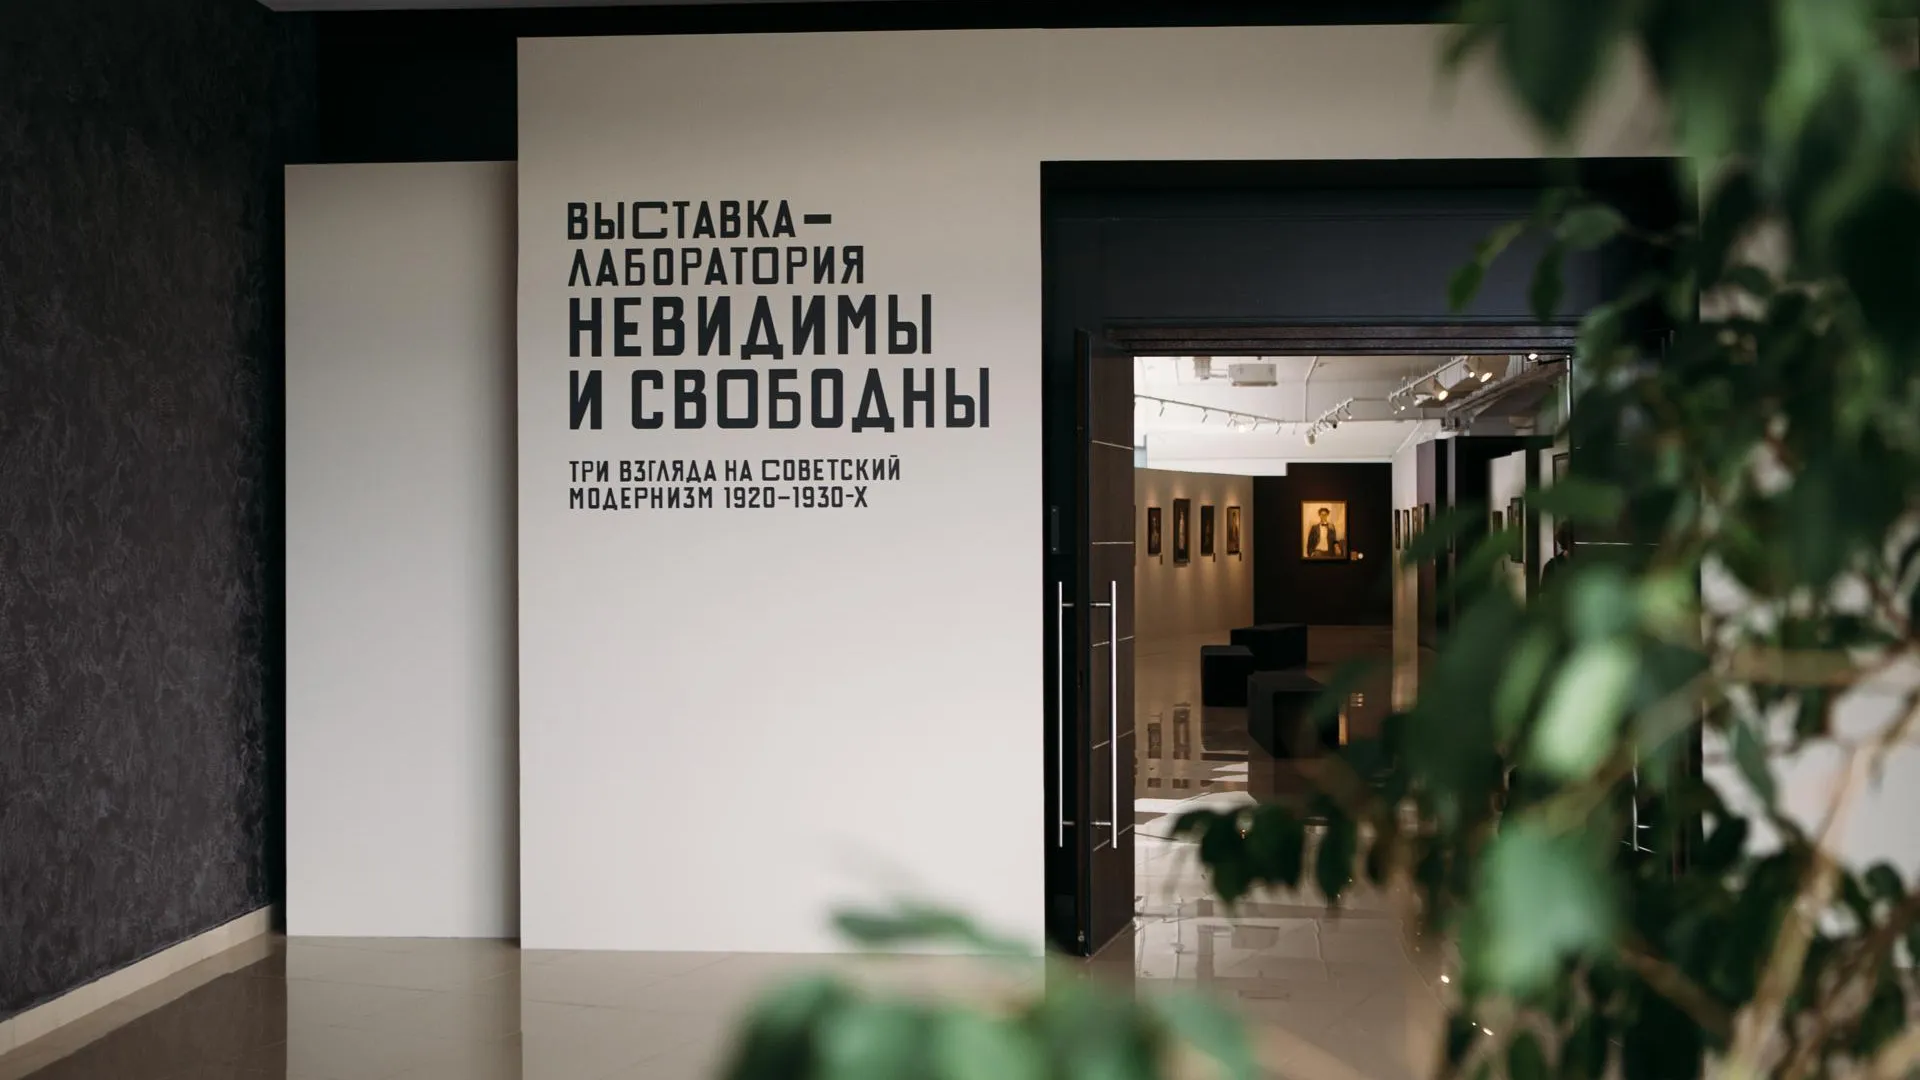 В Подмосковье открылась выставка о советском модернизме